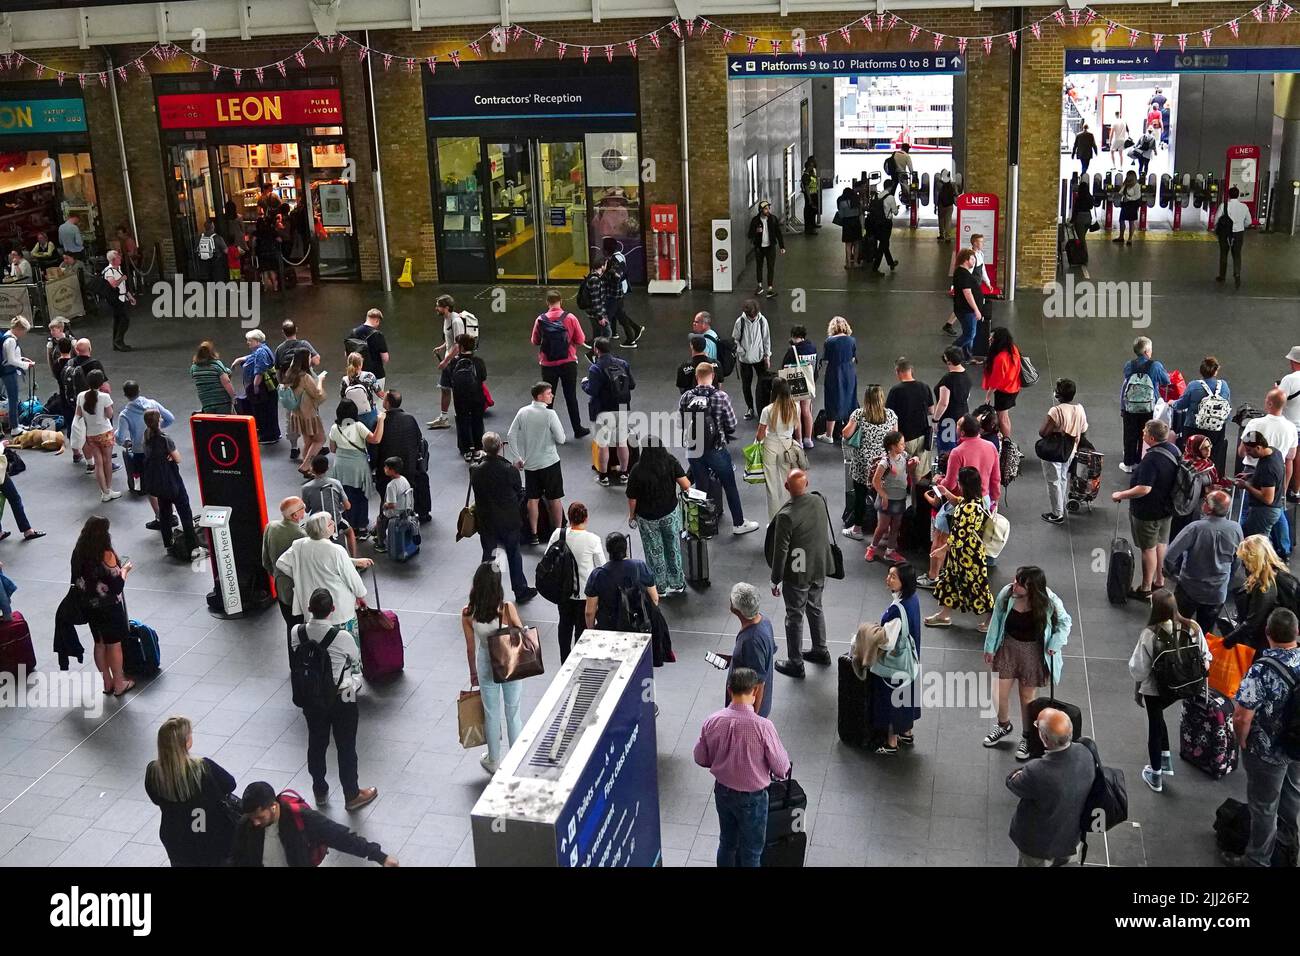 Menschen am Bahnhof King's Cross in London, da viele Familien zu Beginn der Sommerferien für viele Schulen in England und Wales auf einen Kurzurlaub gehen. Bilddatum: Freitag, 22. Juli 2022. Stockfoto